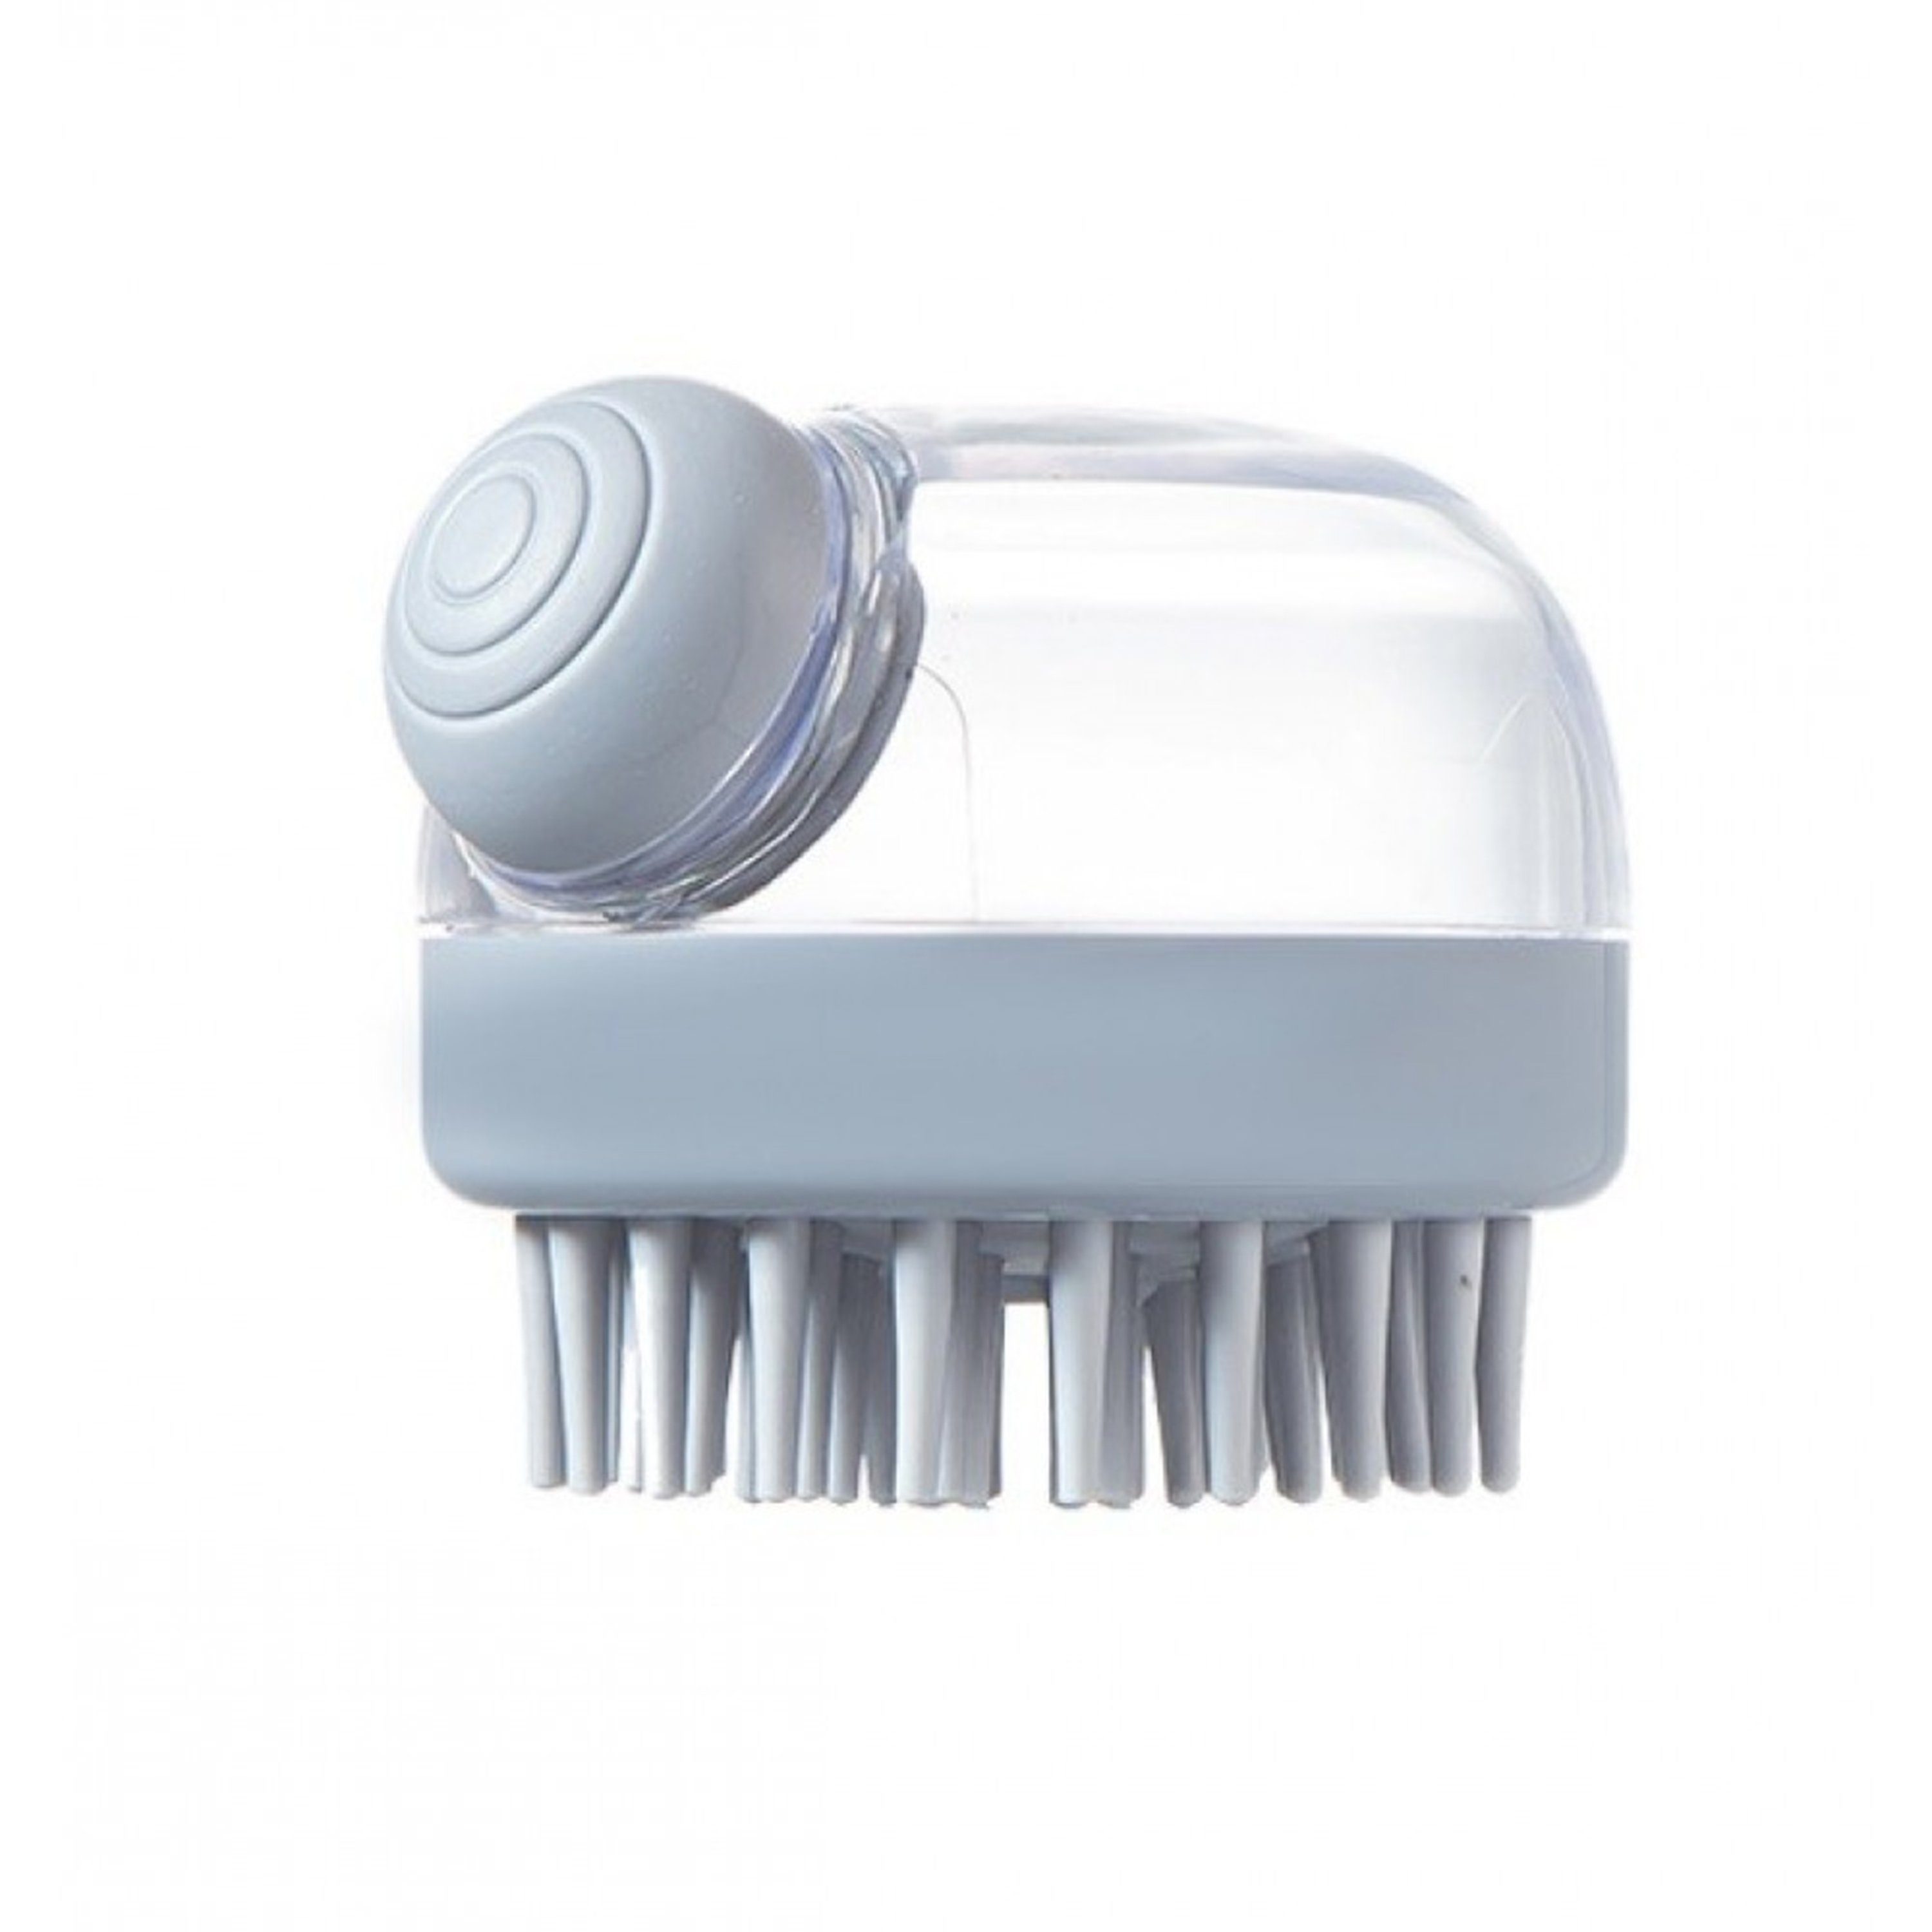 Friseurmeister Badebürste Kopfmassage Bürste - Silikon Kopfhaut Massagebürste